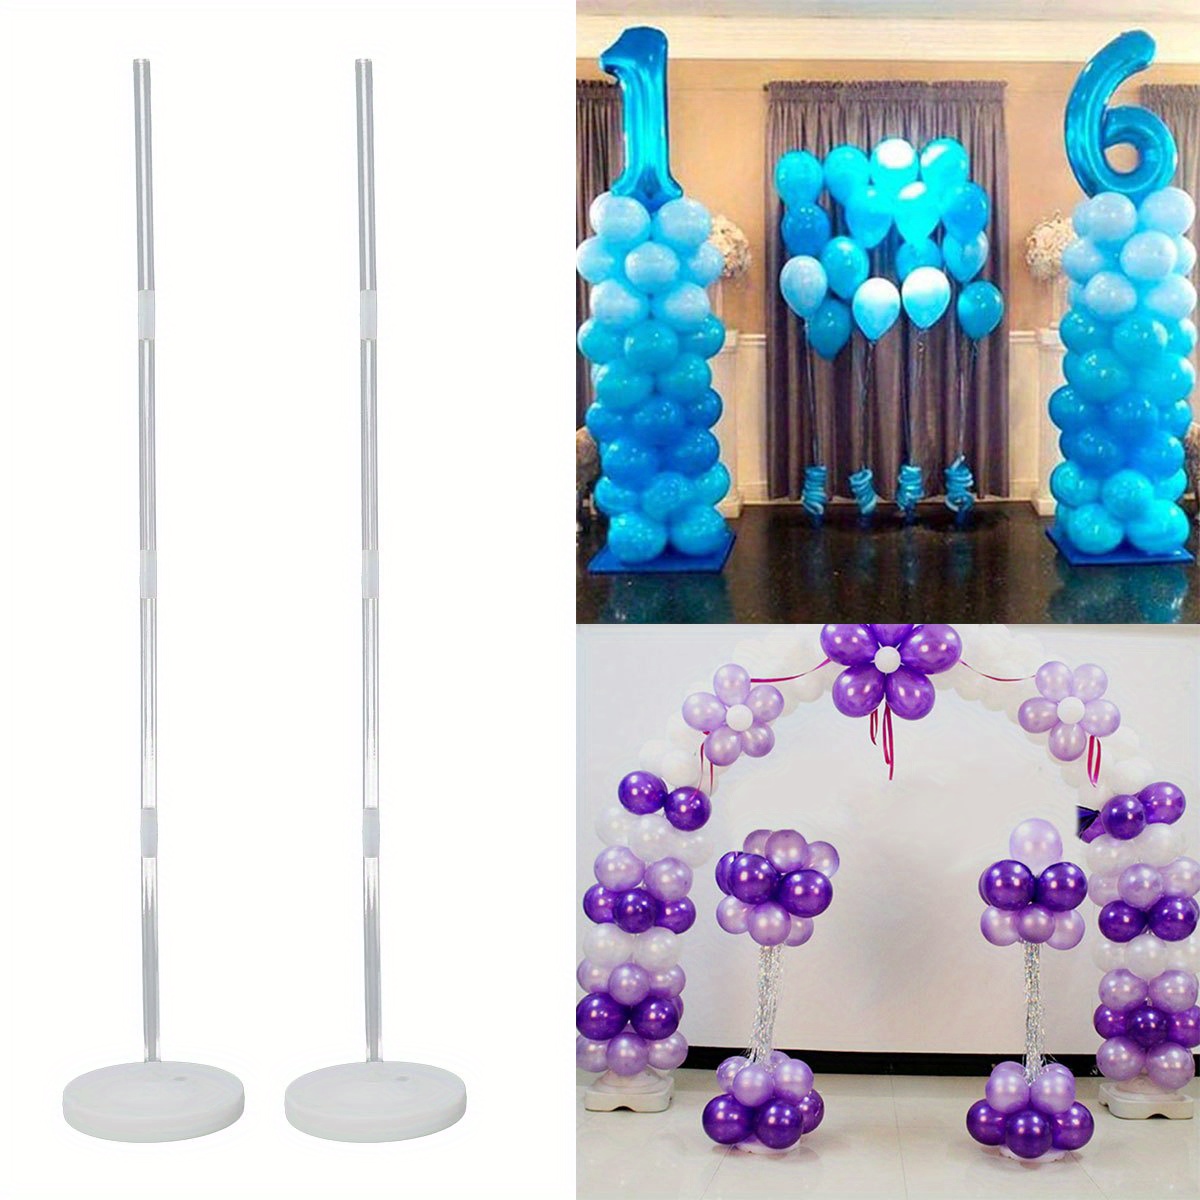  Juego de 4 juegos de soporte de mesa para globos (7 varillas, 7  tazas, 1 base), soporte de mesa reutilizable para globos transparentes con  1 bomba para cumpleaños, boda, fiesta, festival